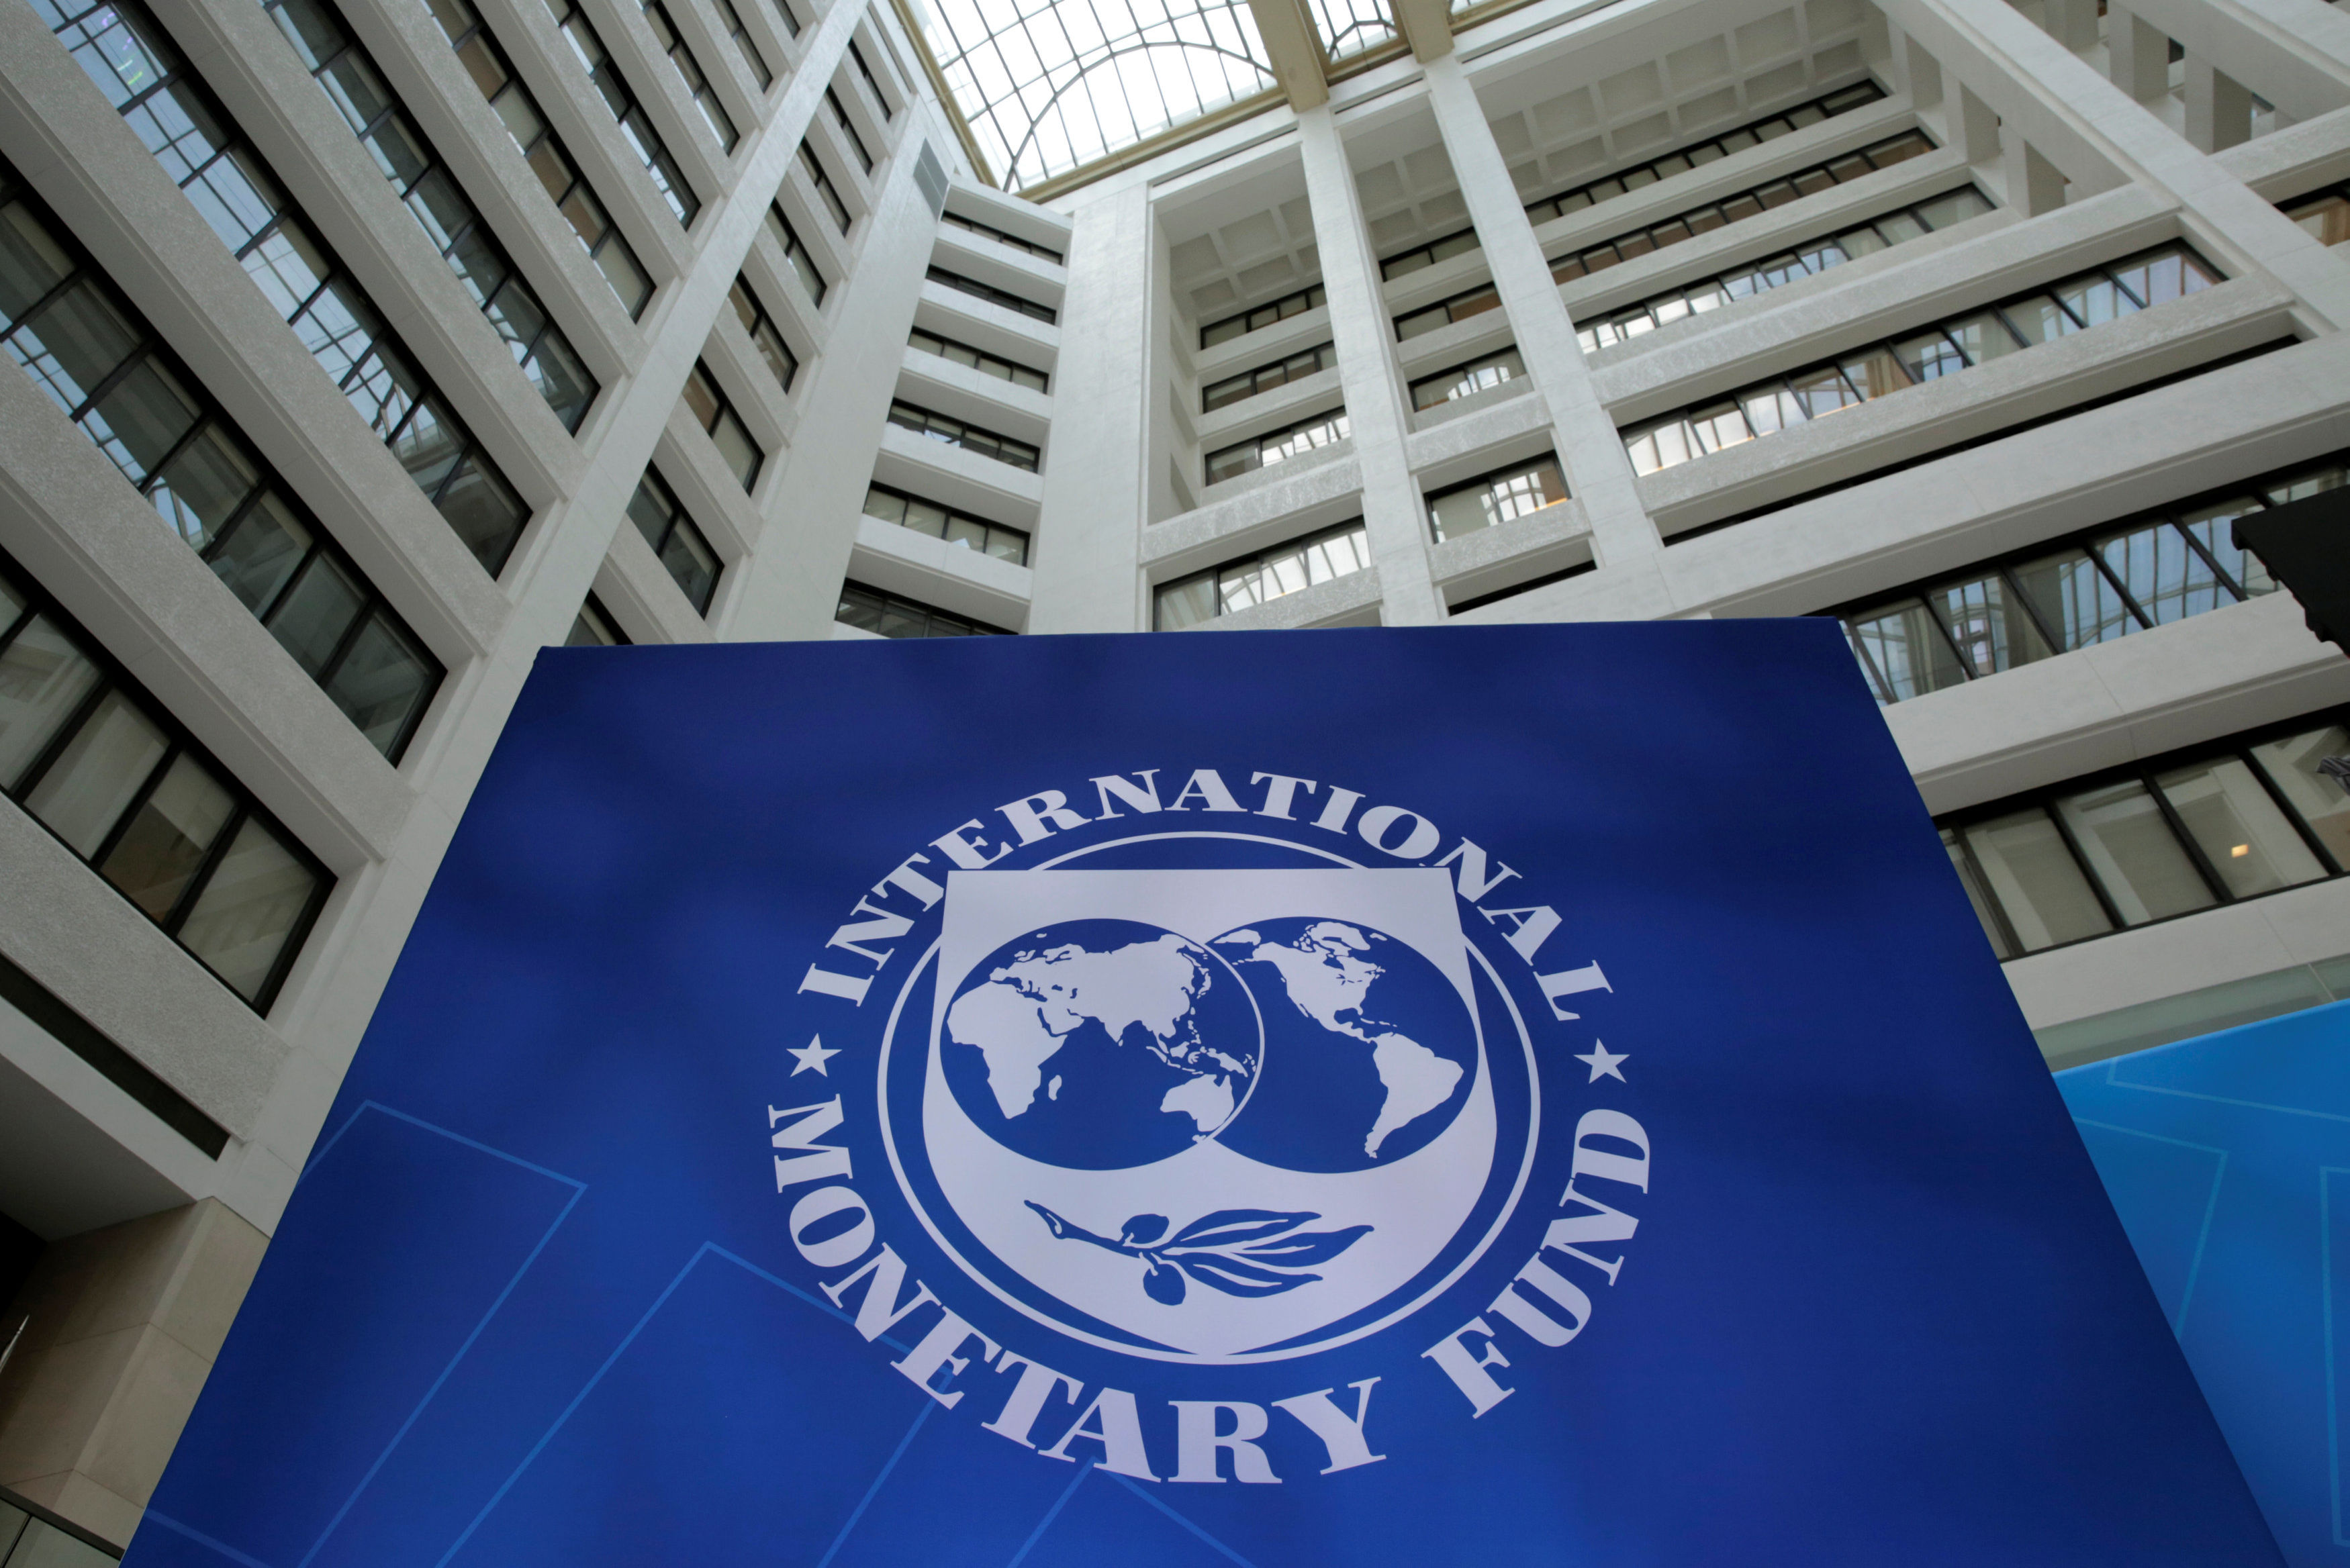 Мировой валютный фонд. Международный валютный фонд (МВФ) - International monetary Fund (IMF). Здание МВФ США. Флаг МВФ. Здание МВФ В Вашингтоне.